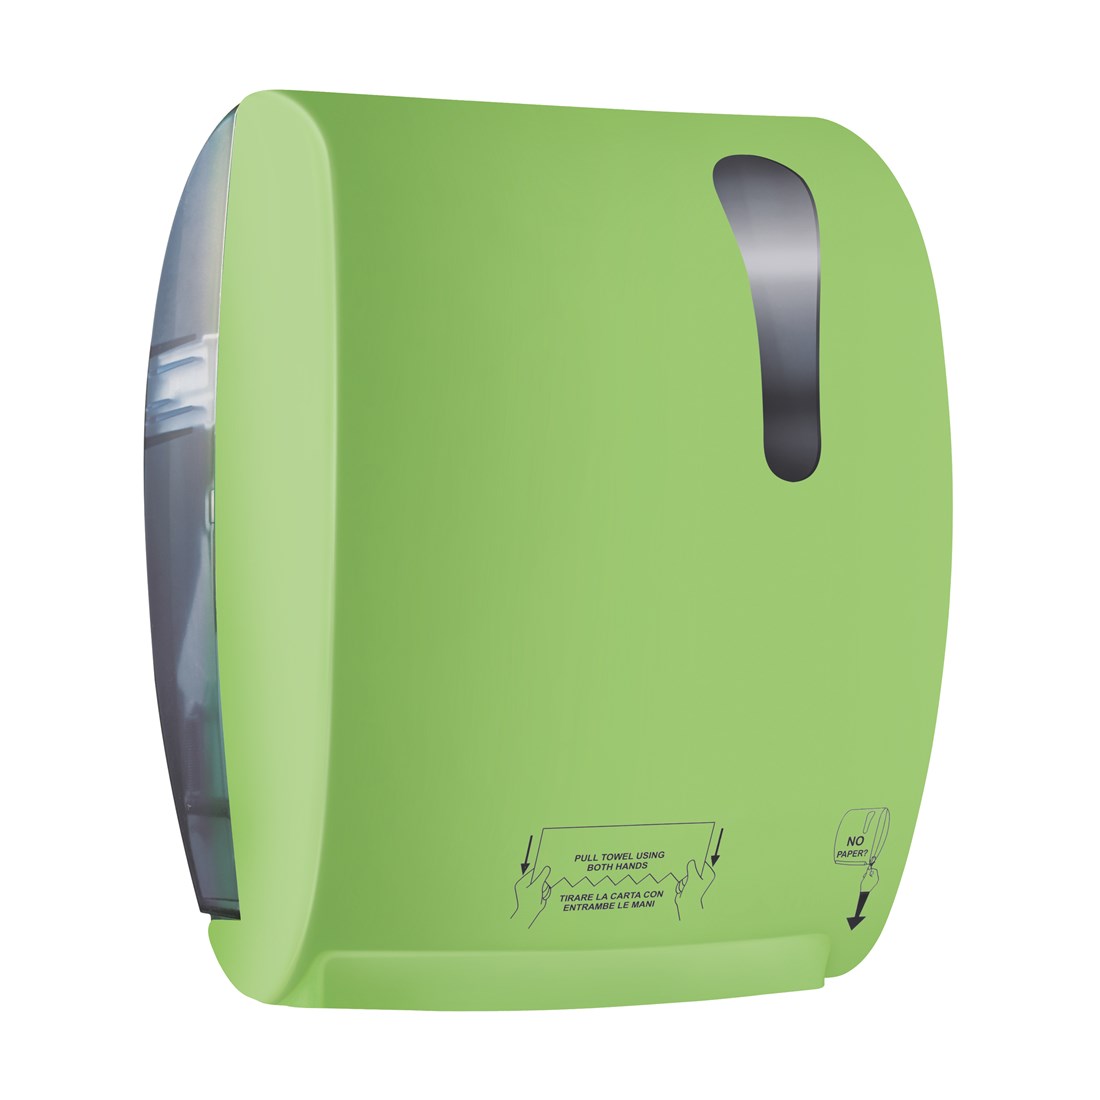 Handdoekautomaat Easypaper Autocut Groen